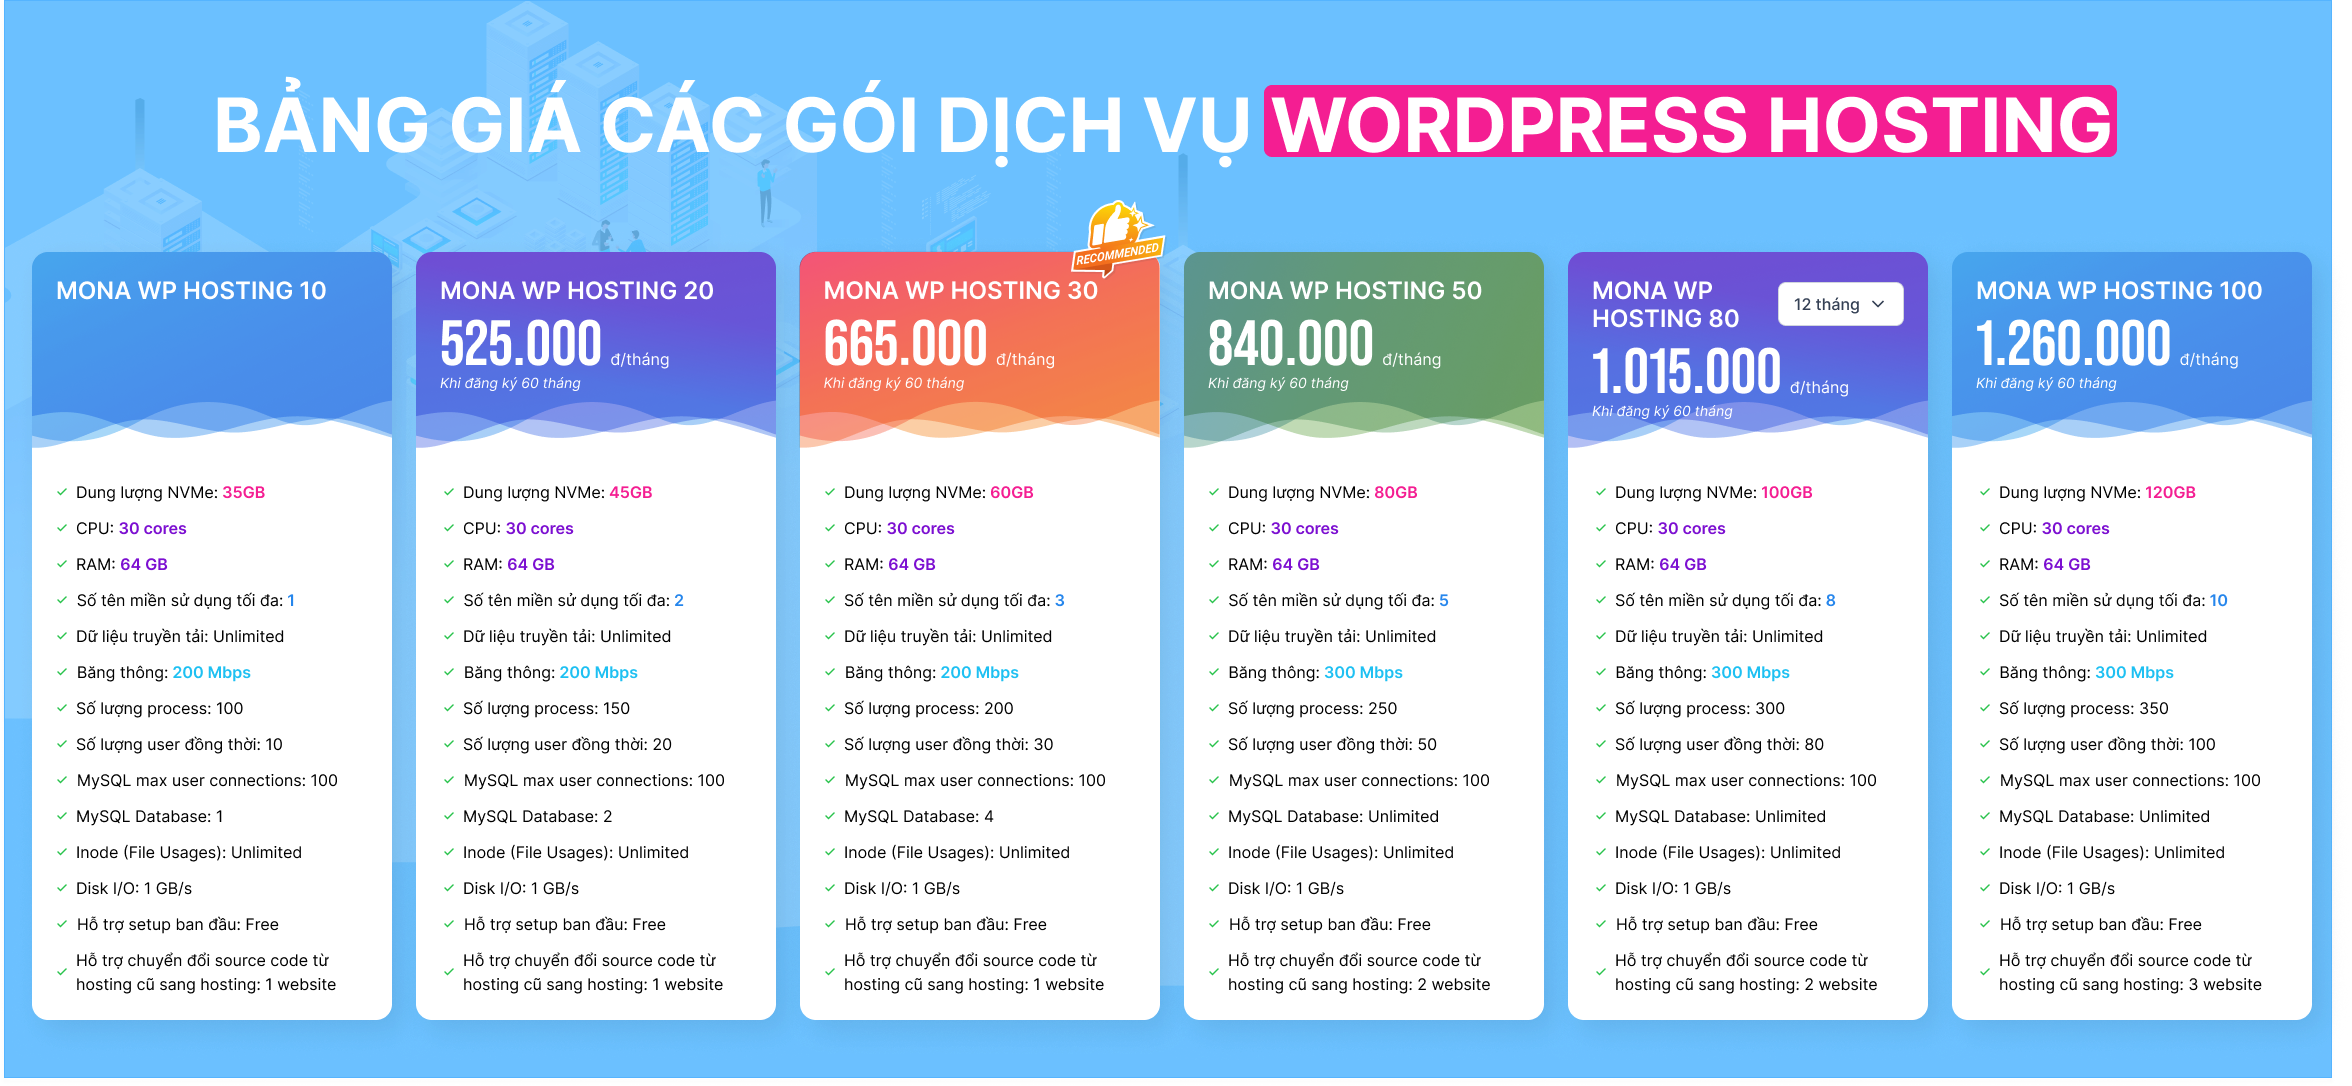 Bảng giá gói dịch vụ WordPress Hosting tại MONA